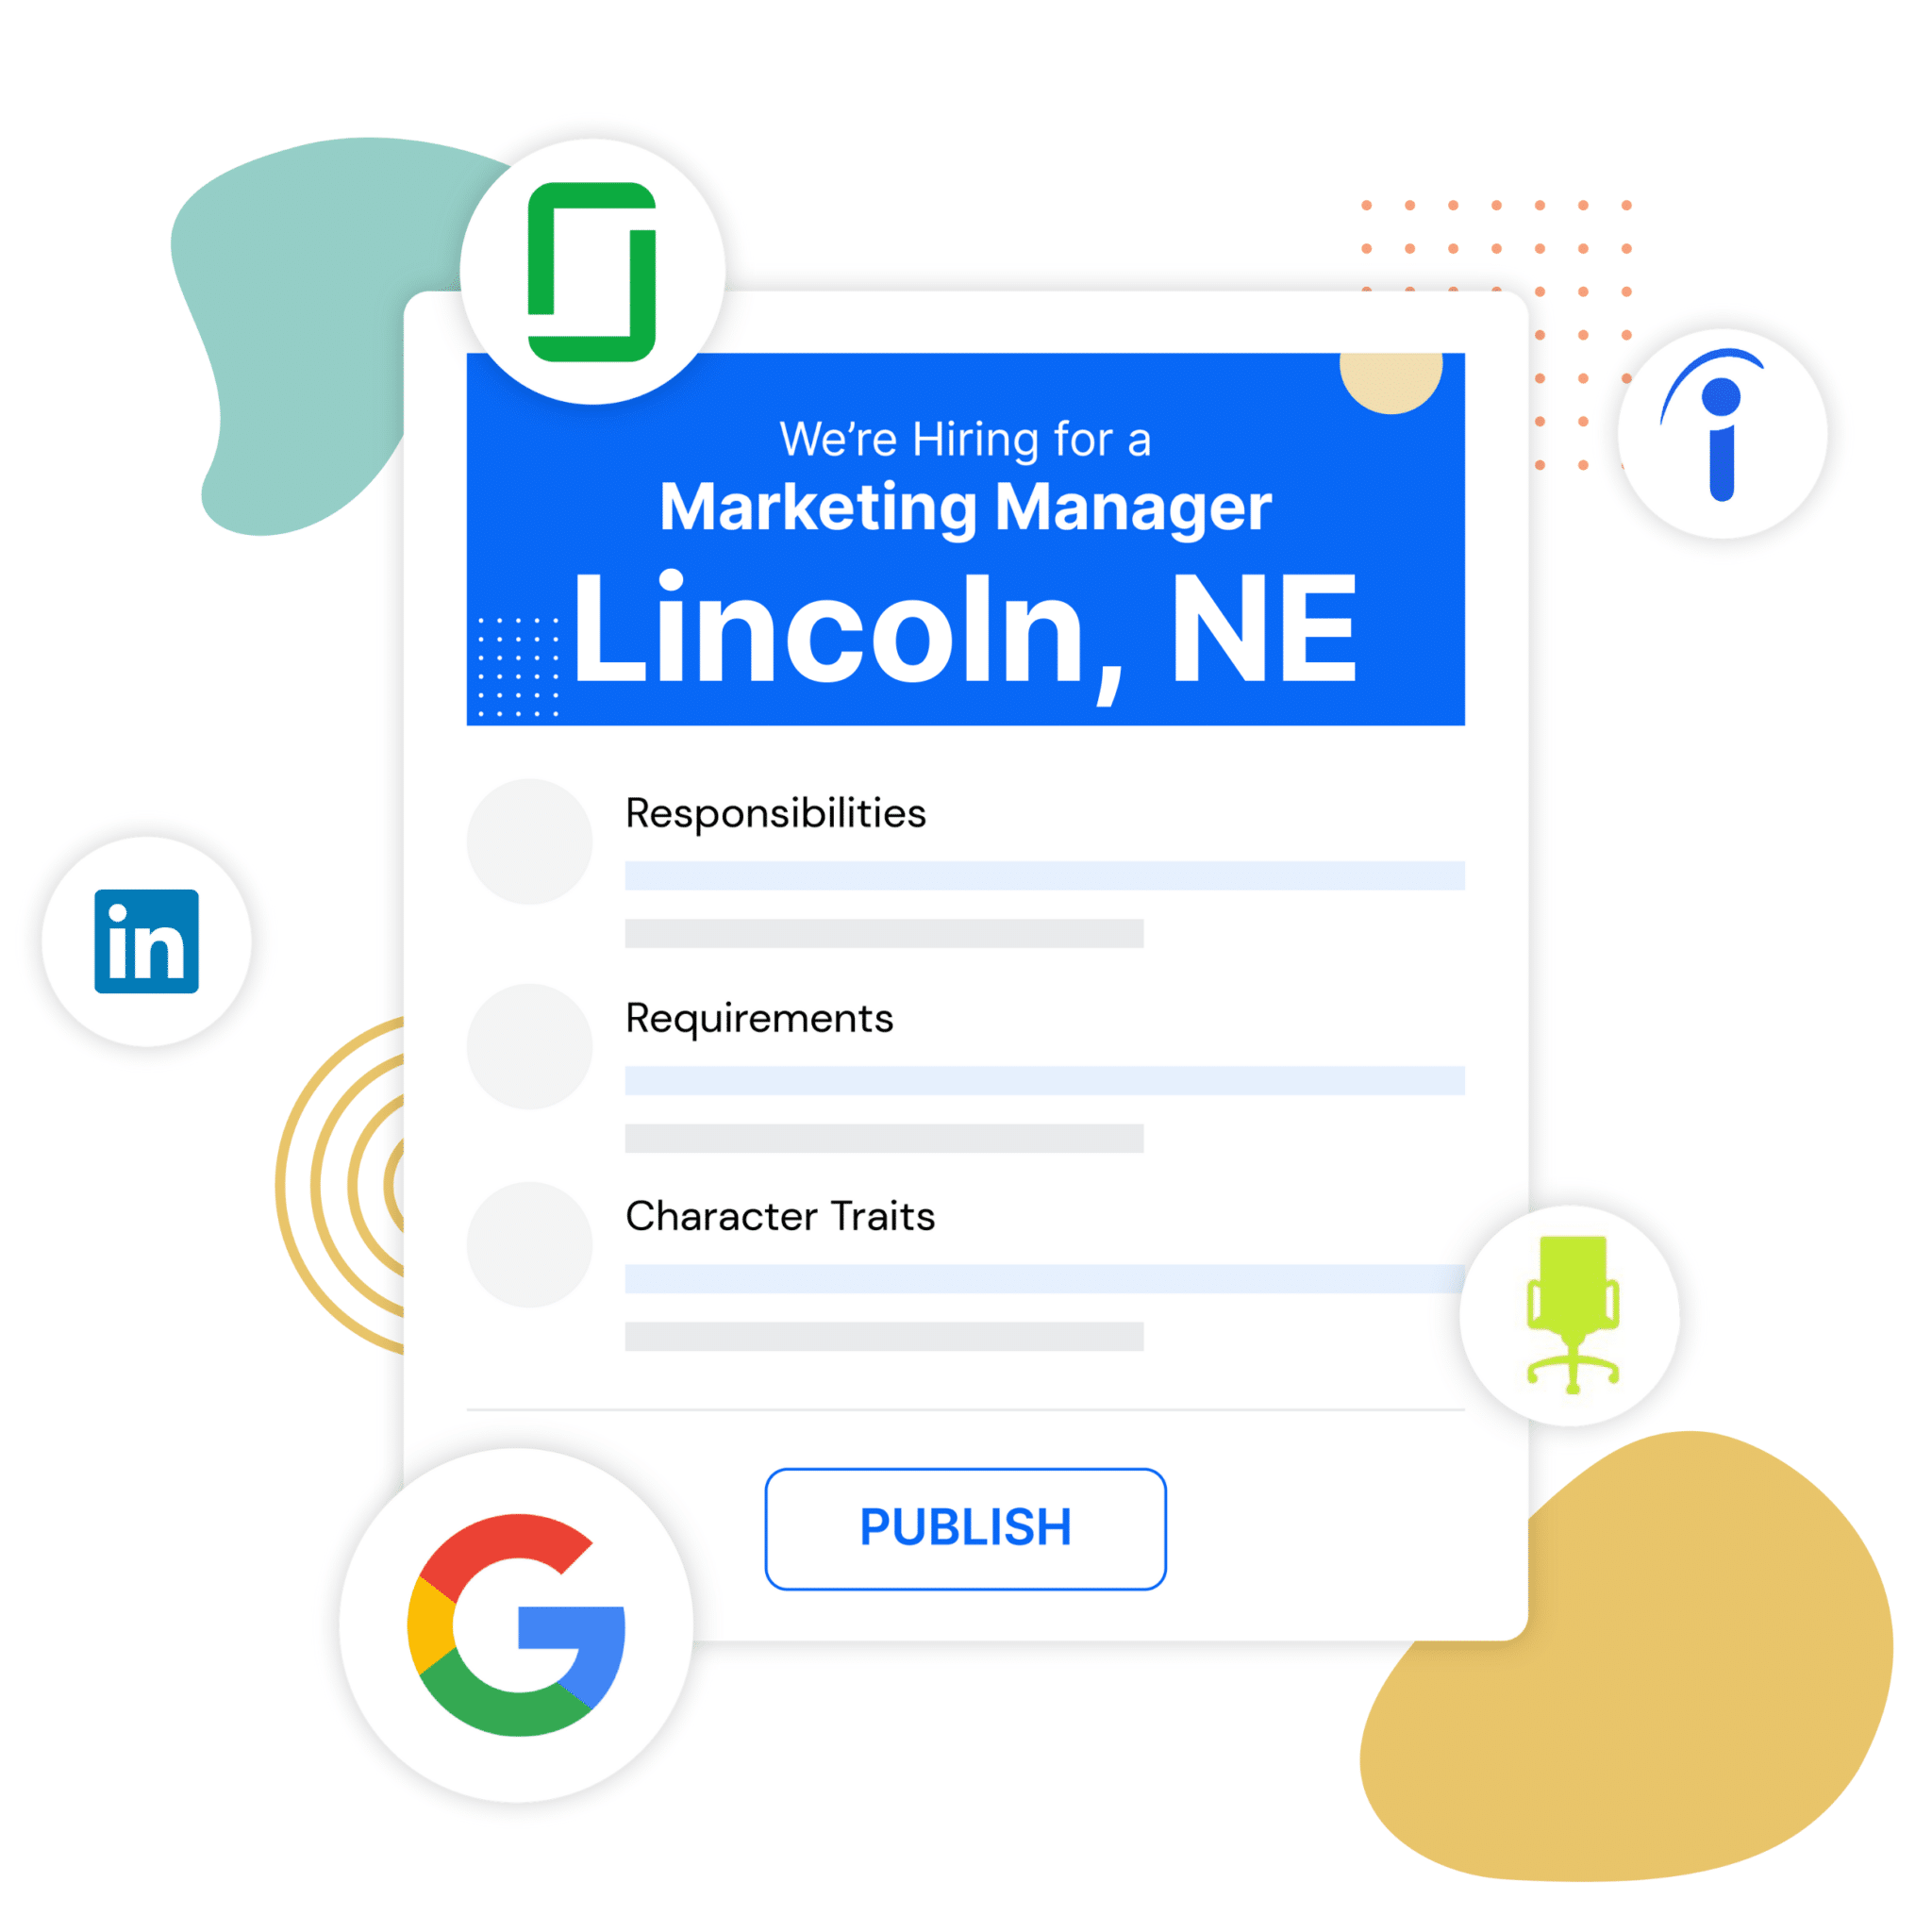 Job Posting Sites in Lincoln, NE